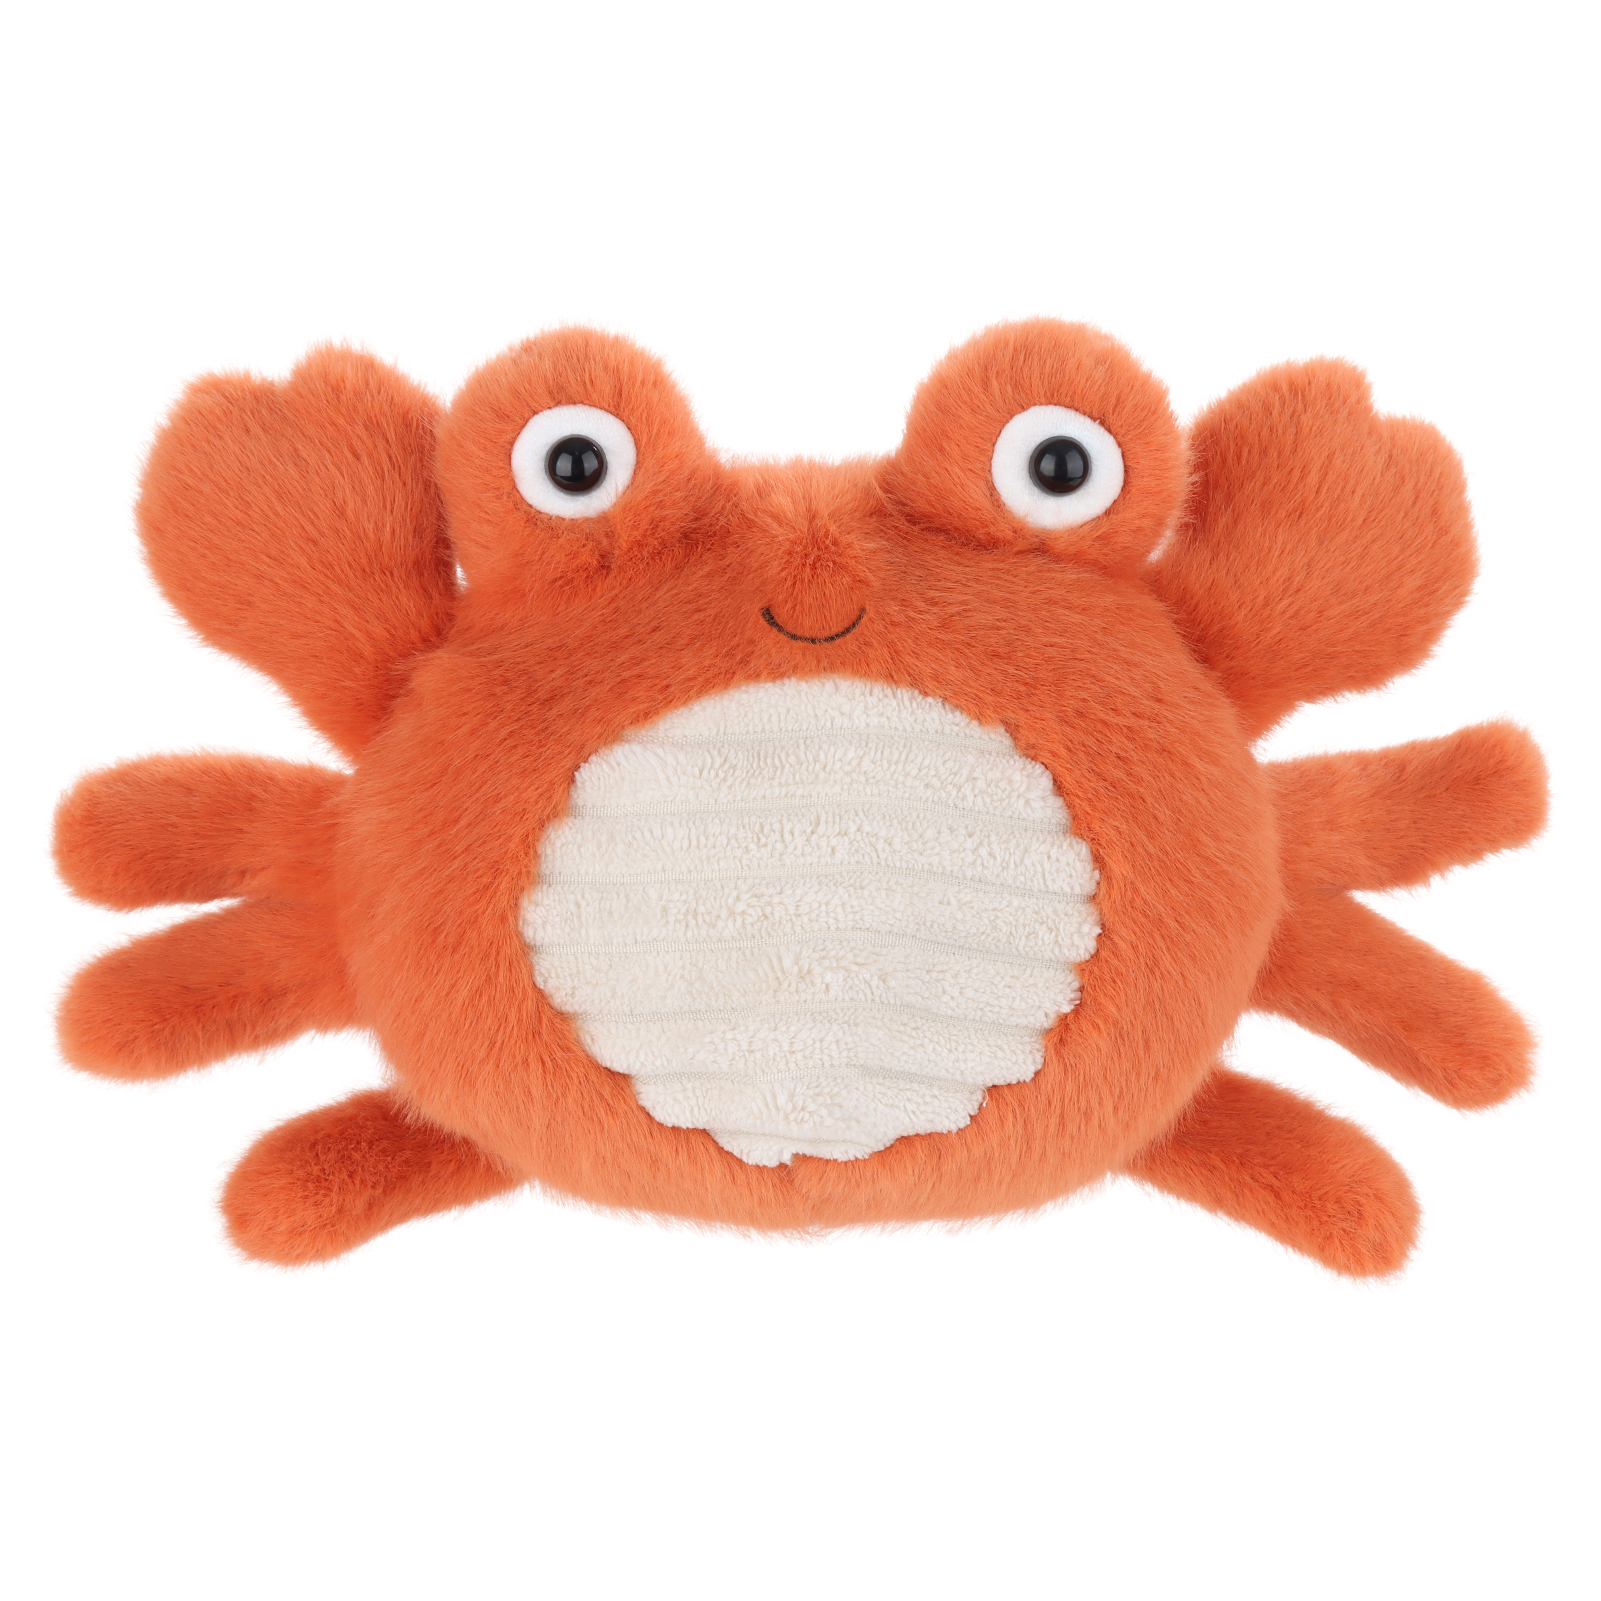 Ծիրանի գառան երջանիկ ծովախեցգետին լցոնված կենդանիների փափուկ պլյուշ խաղալիքներ Առաջարկվող պատկեր